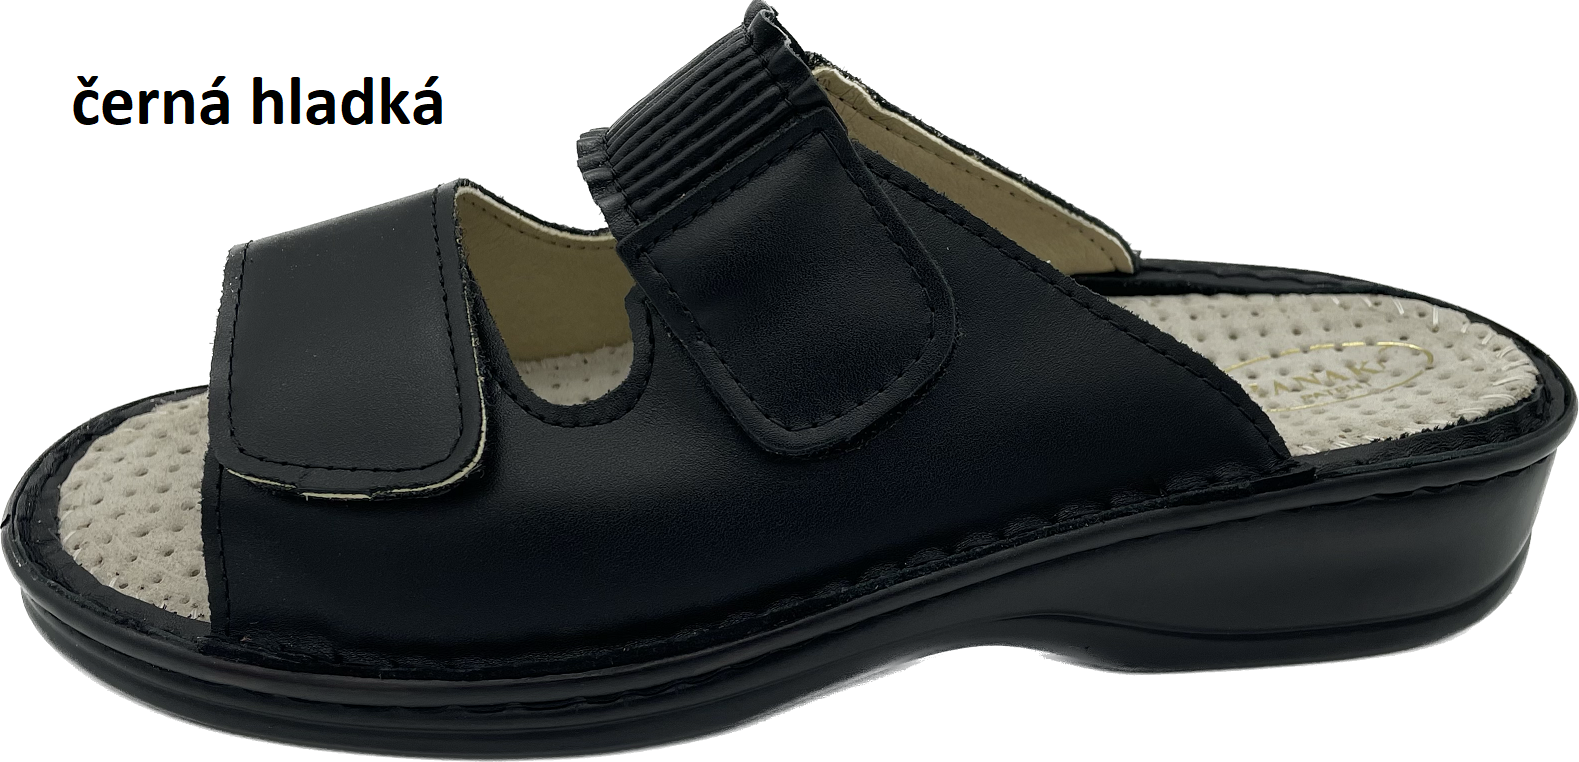 Boty Hanák vzor 304 - černá podešev Barva usně: černá hladká, Velikosti obuvi: 42